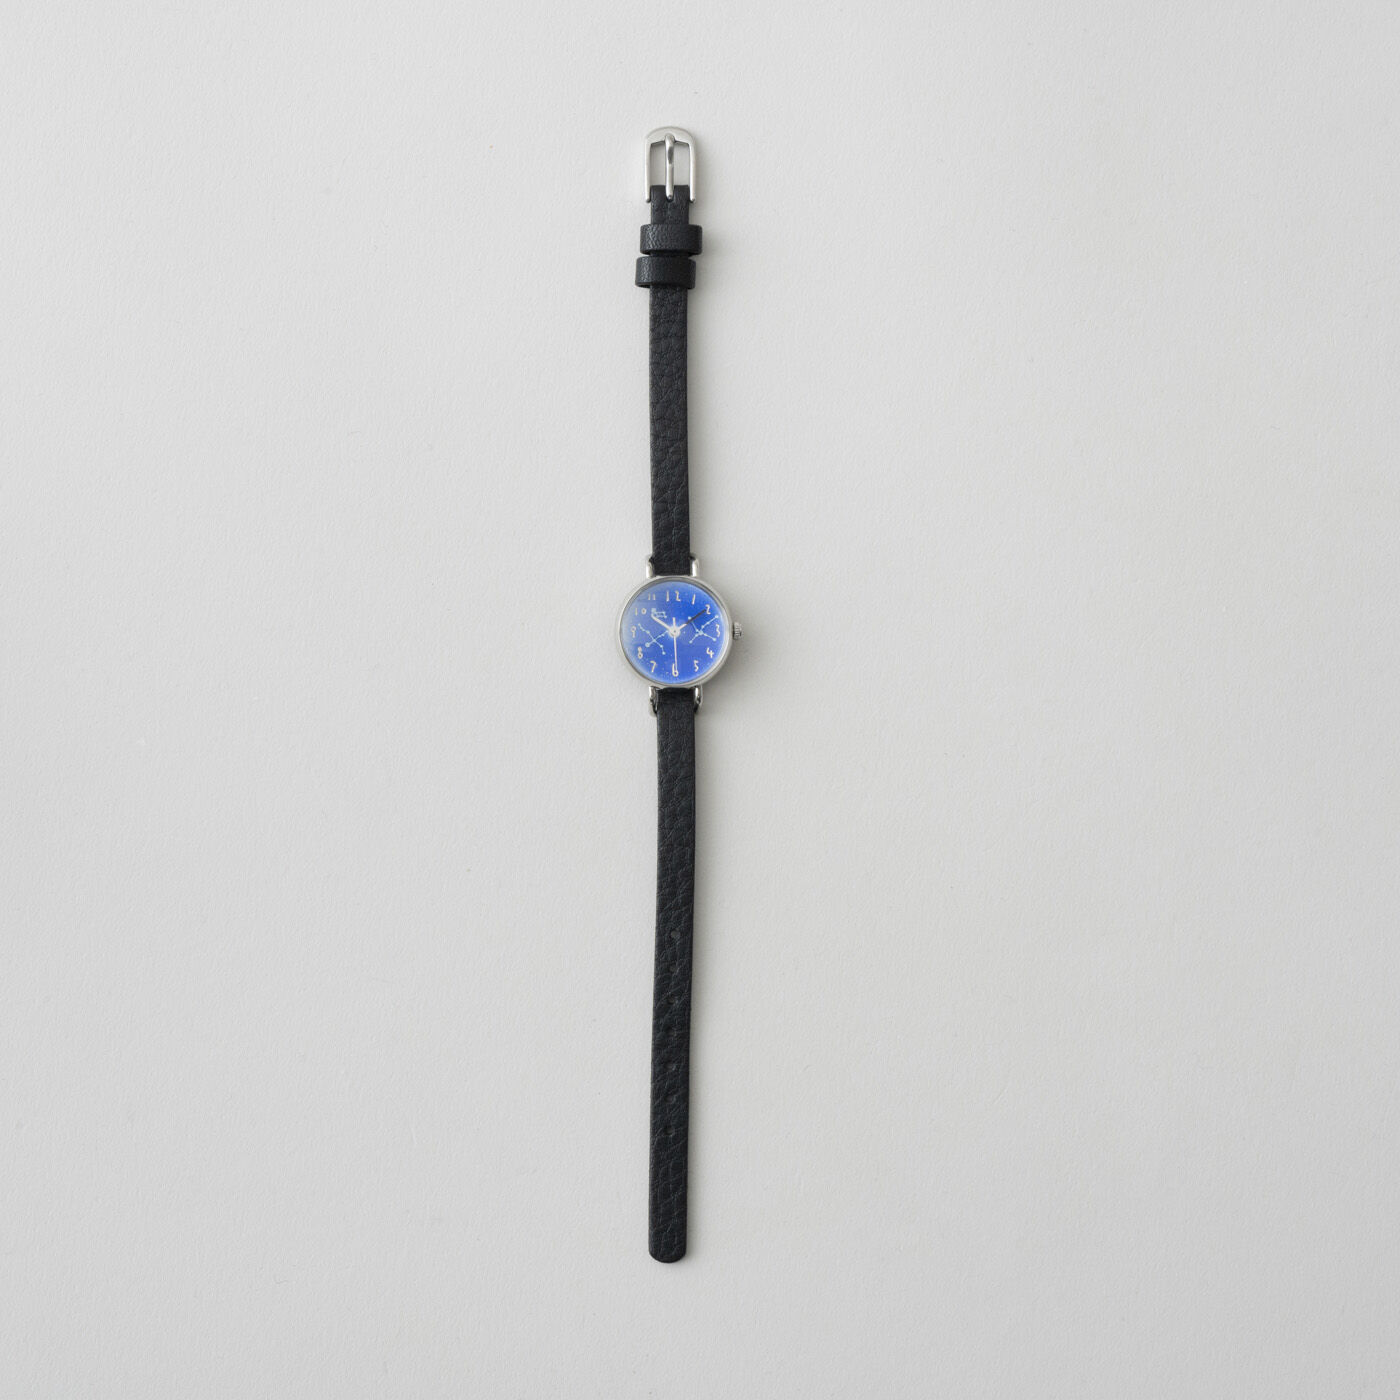 ＆Stories|金沢の時計職人が手掛けた　夏の星座に見惚れる腕時計〈ブラック〉|文字盤に合わせて牛島さんがセレクトしたのは、細く軽やかなブラックのレザーベルト。